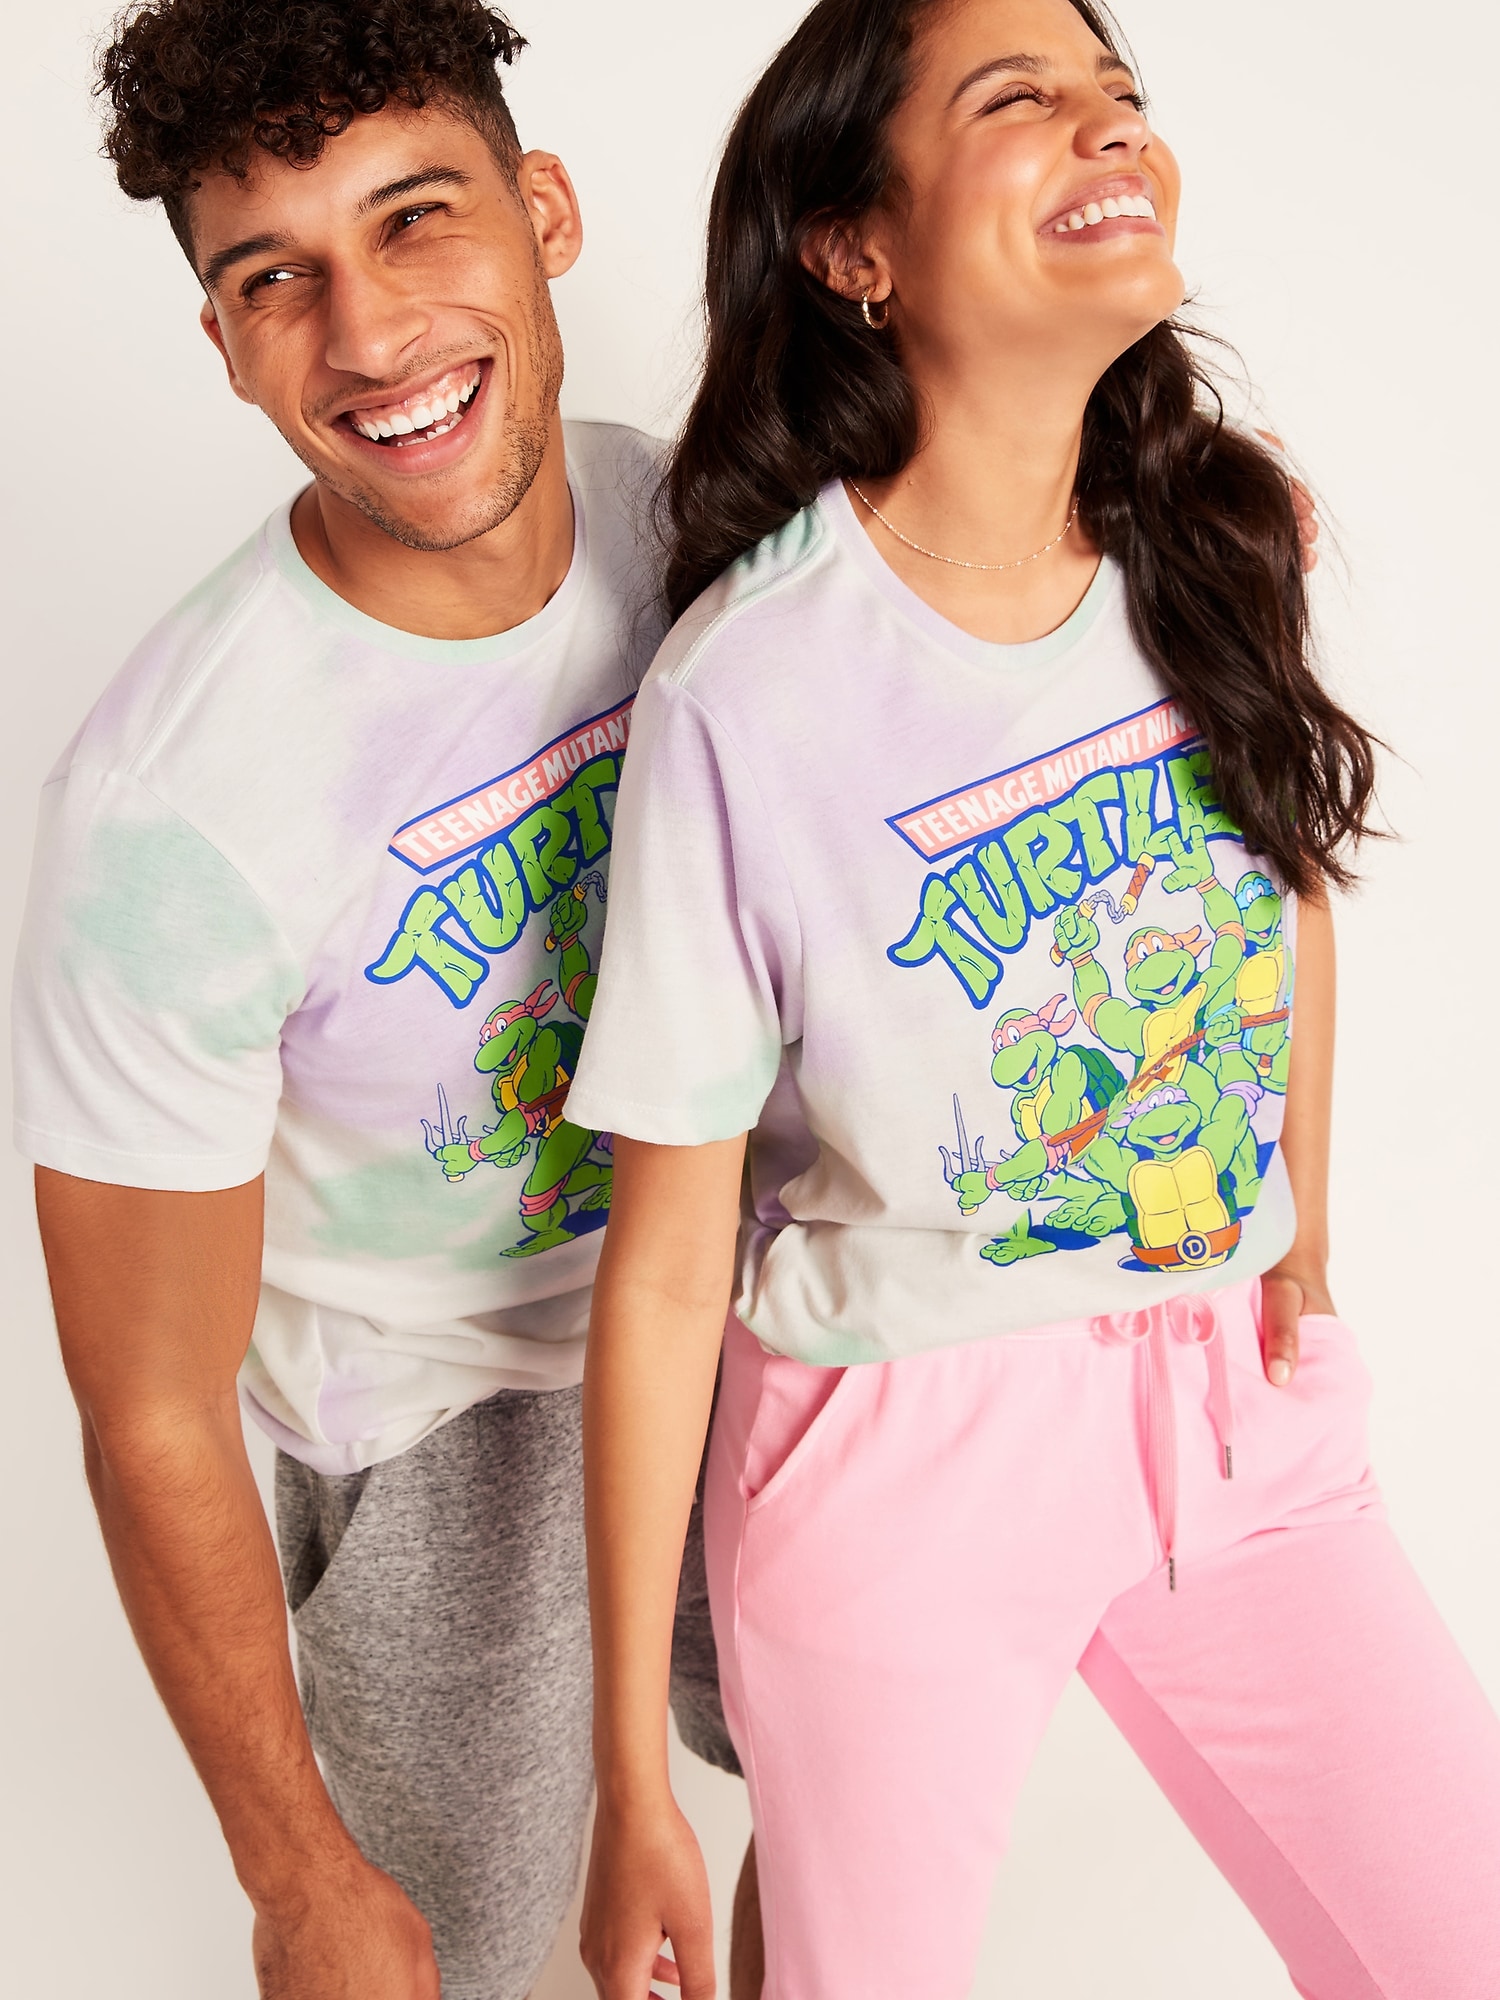 Old Navy Teenage Mutant Ninja Turtles T Shirt - Adult Large - Super Soft